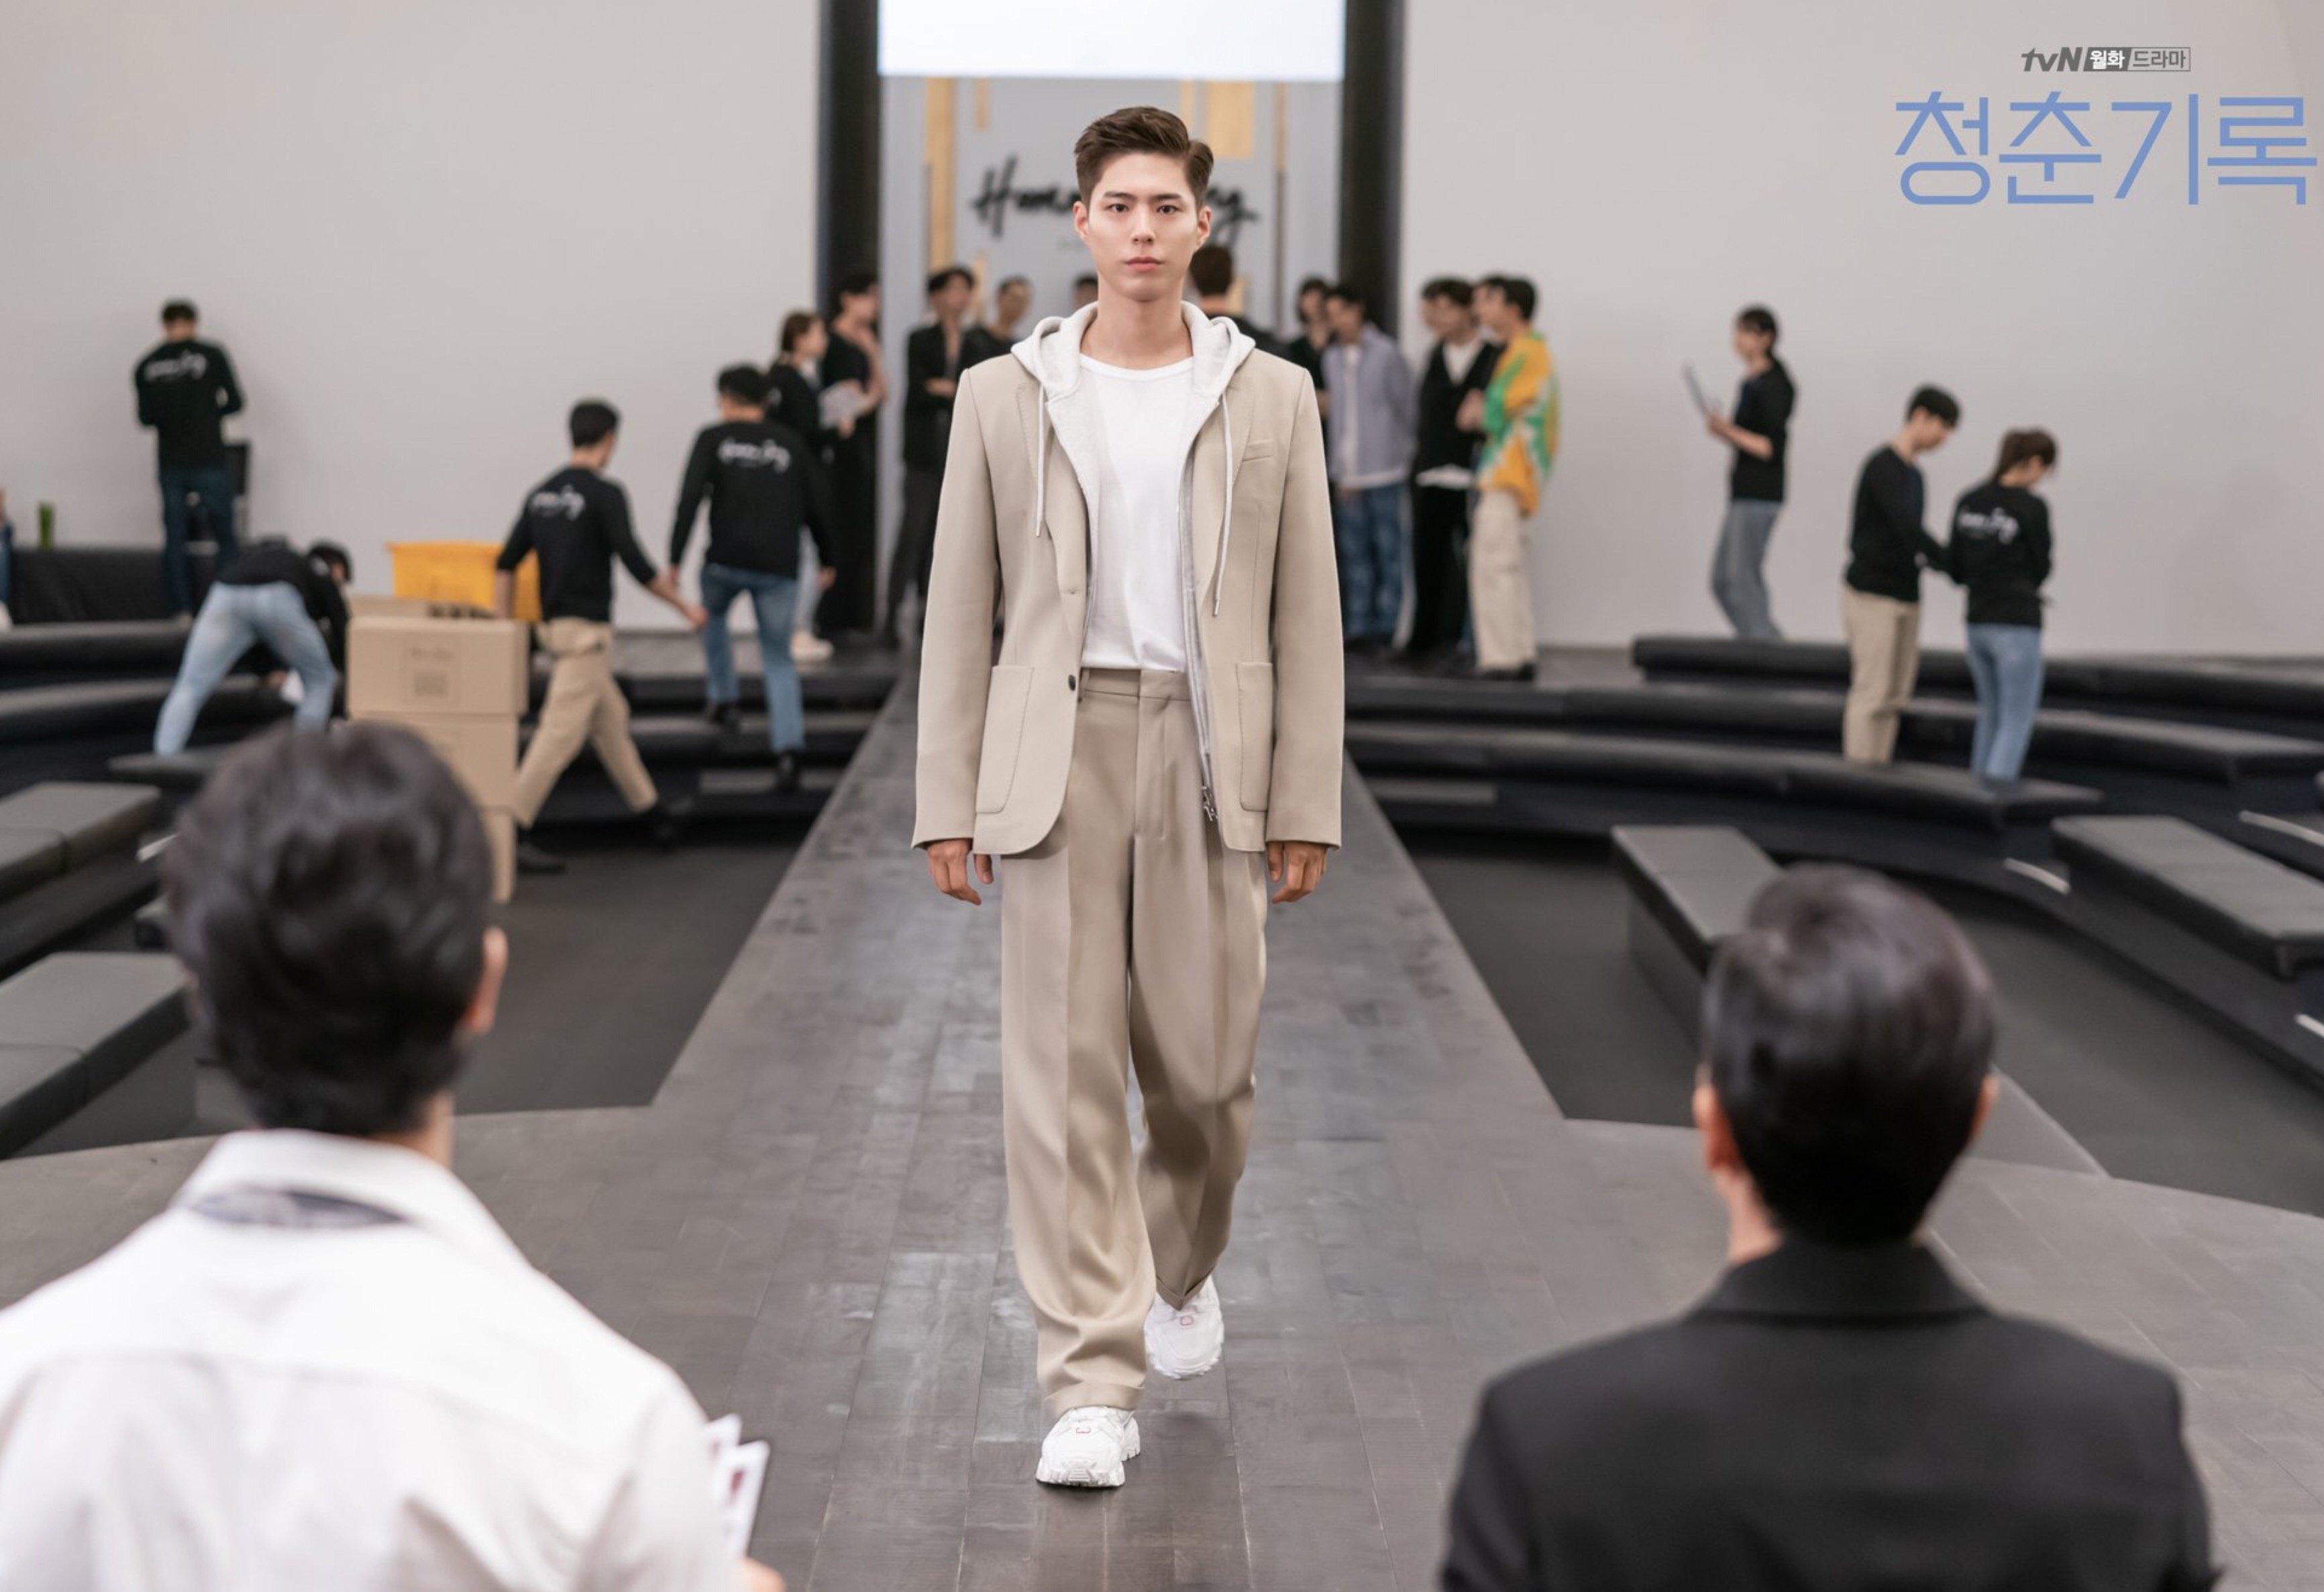 Lần đầu tiên người ta được chứng kiến Park Bo Gum đi catwalk, từ thần thái đến dáng đi chẳng thua kém một model chuyên nghiệp nào (Ảnh: Internet)